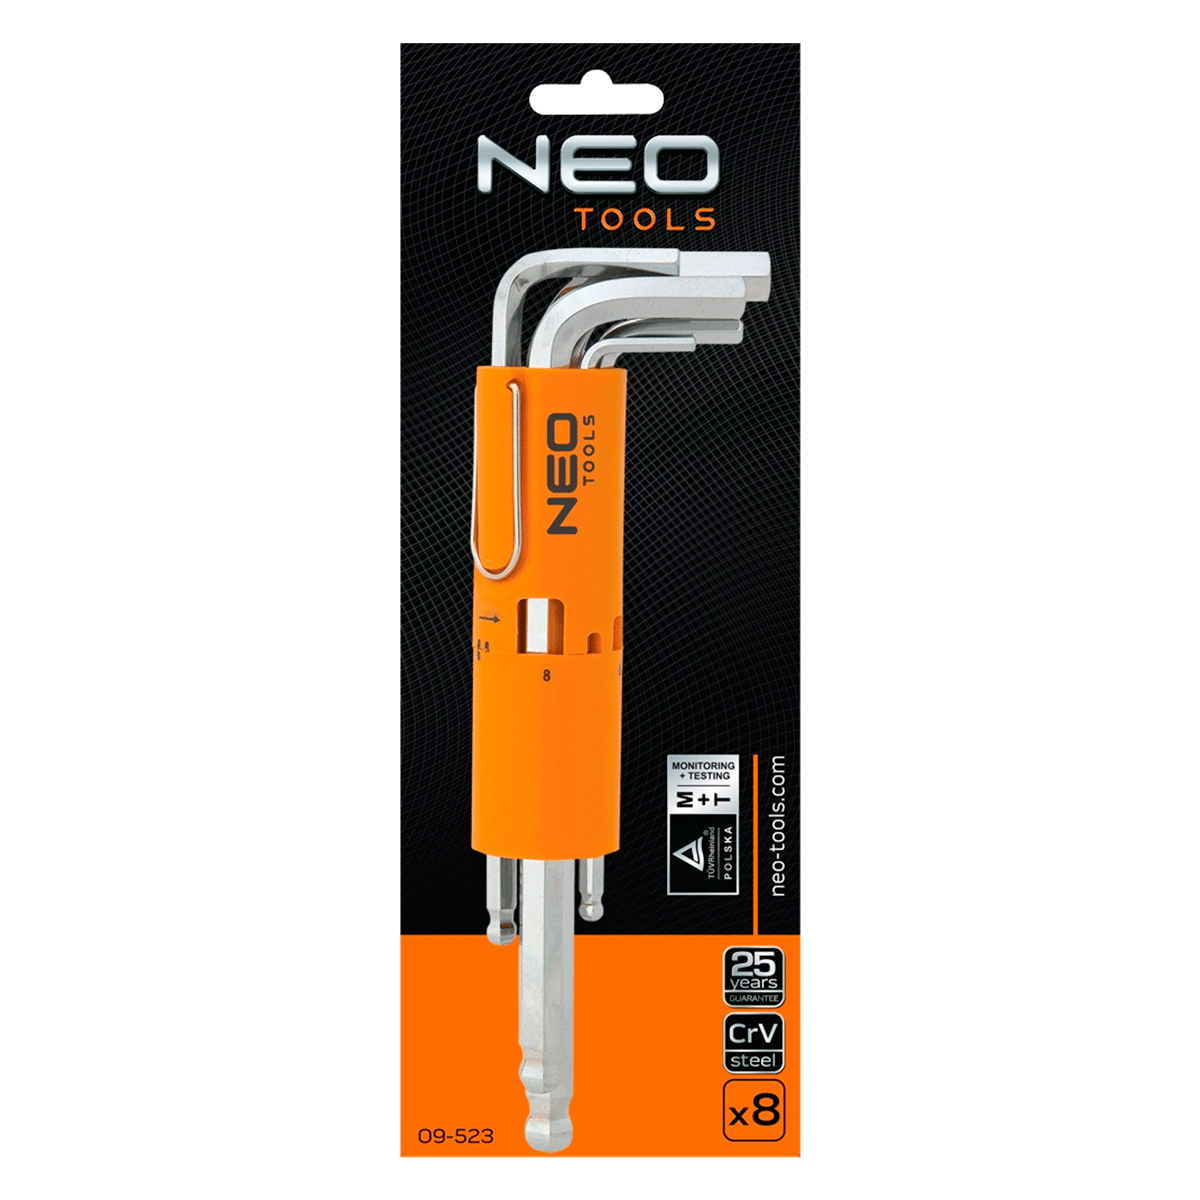 Ключи NEO шестигранные, 2.5-10 мм, набор 8 шт. (09-523) - Купить